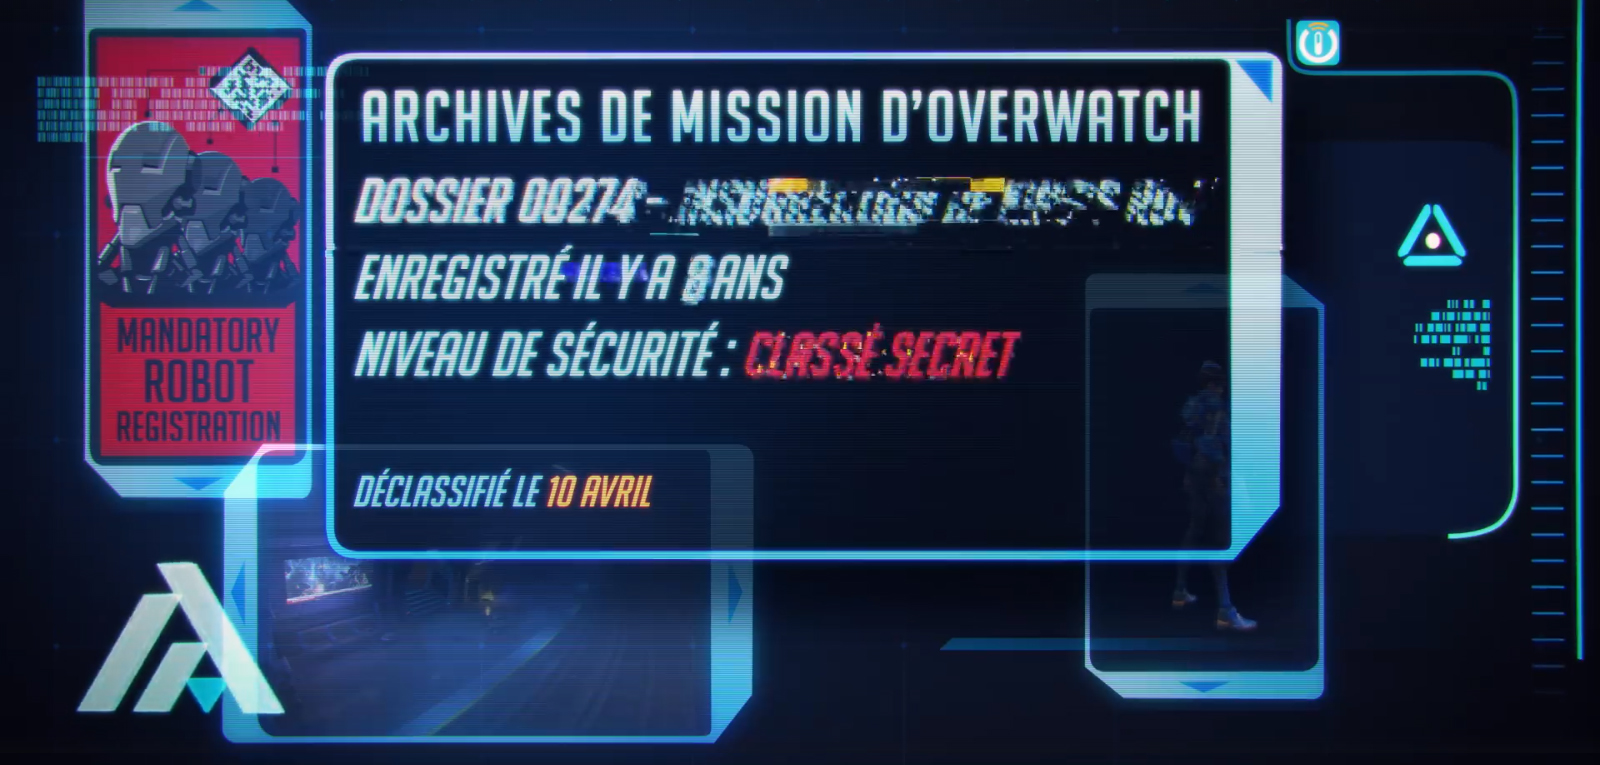 Une seconde image est inclue dans la vidéo du tease d'Archives Overwatch